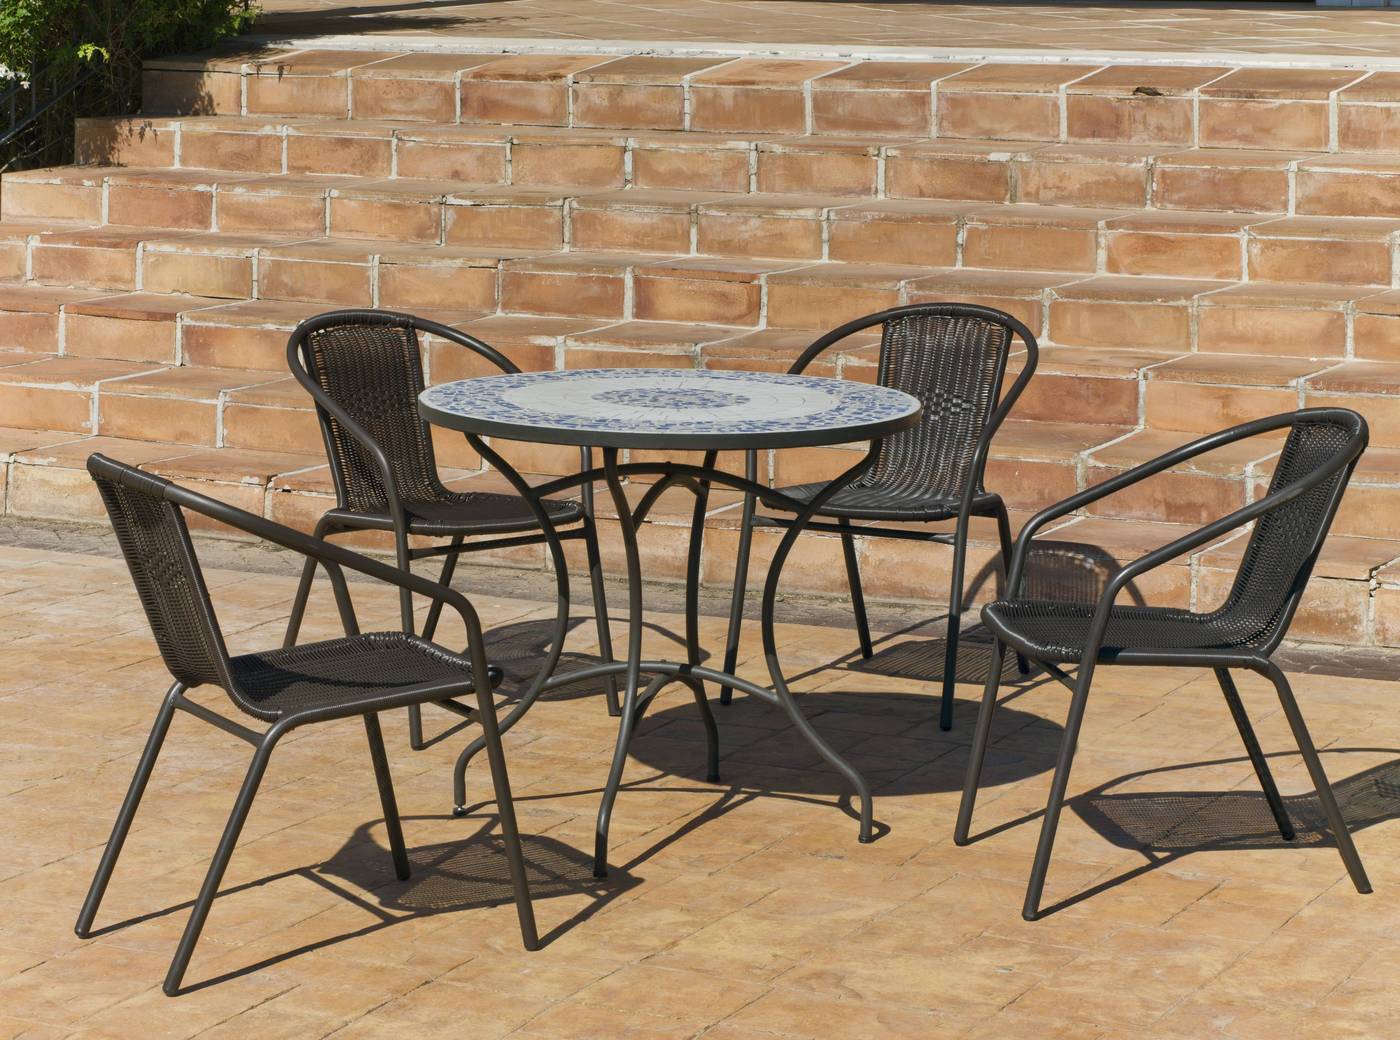 Conjunto de acero color bronce: 1 mesa de forja con panel mosaico + 4 sillones de acero y wicker reforzado